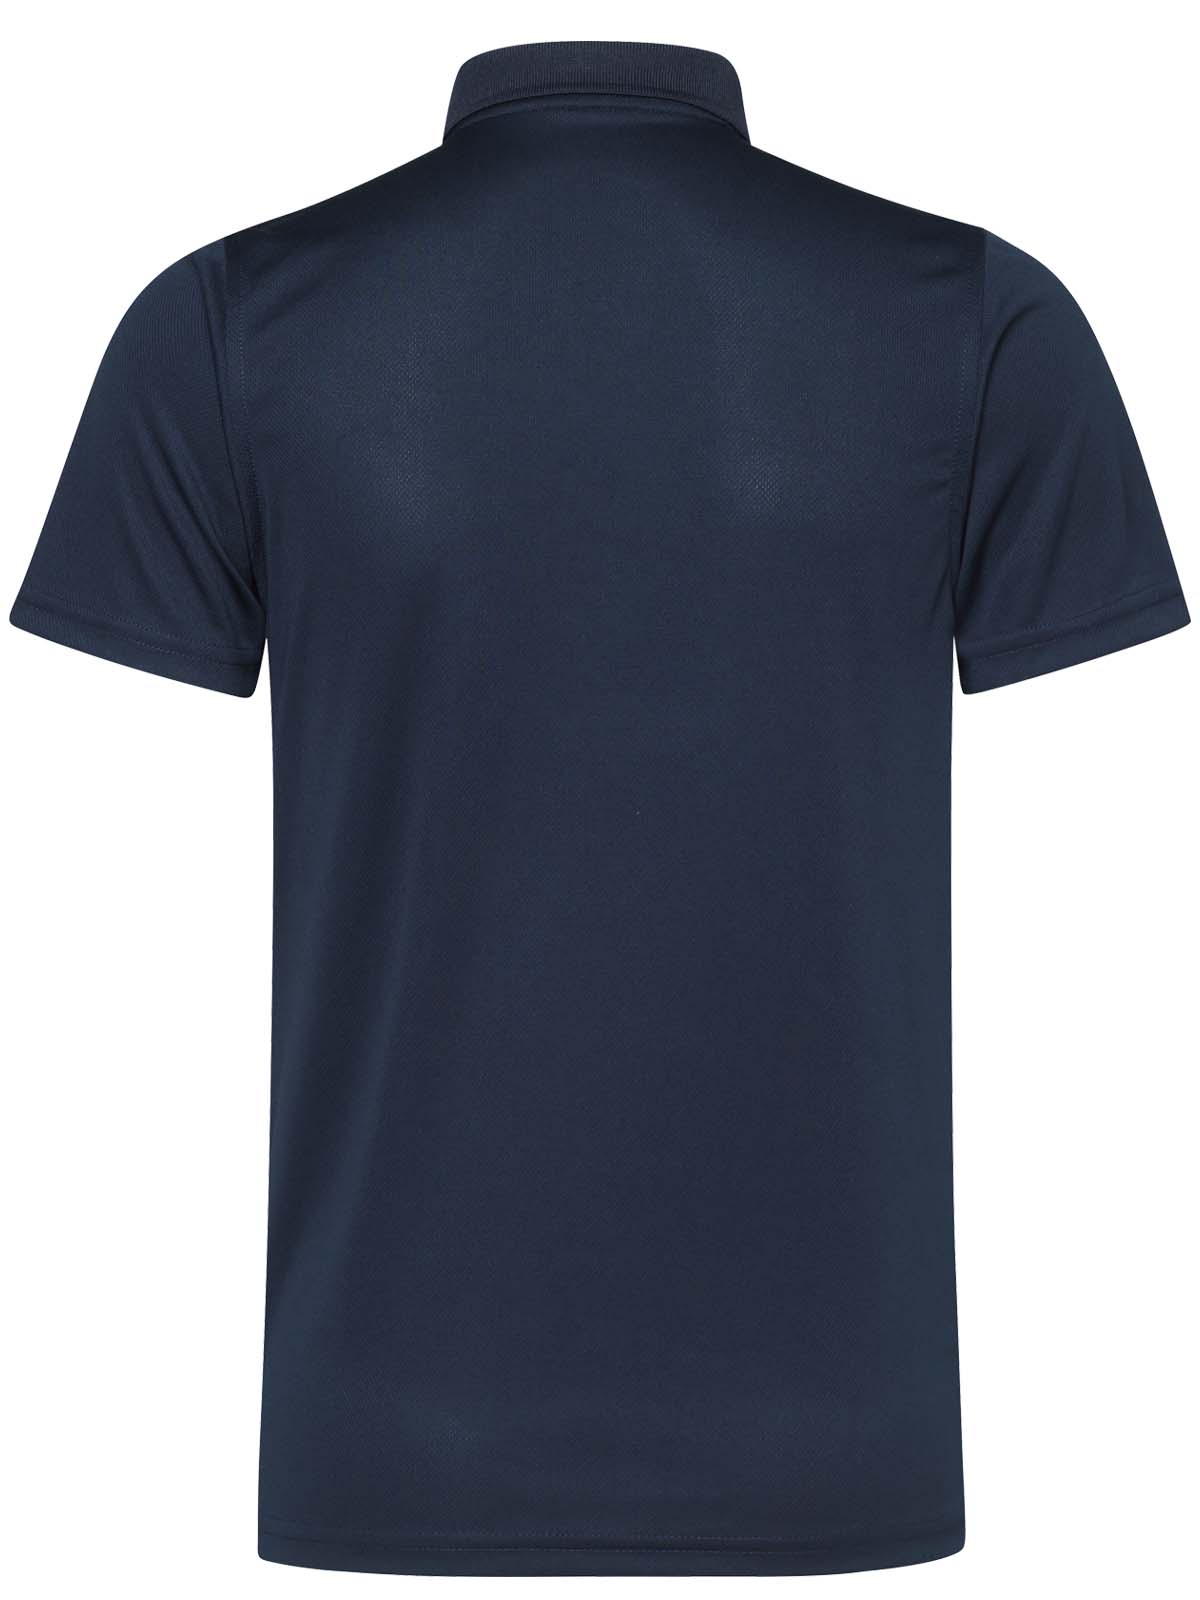 USA Polo Shirt Navy 